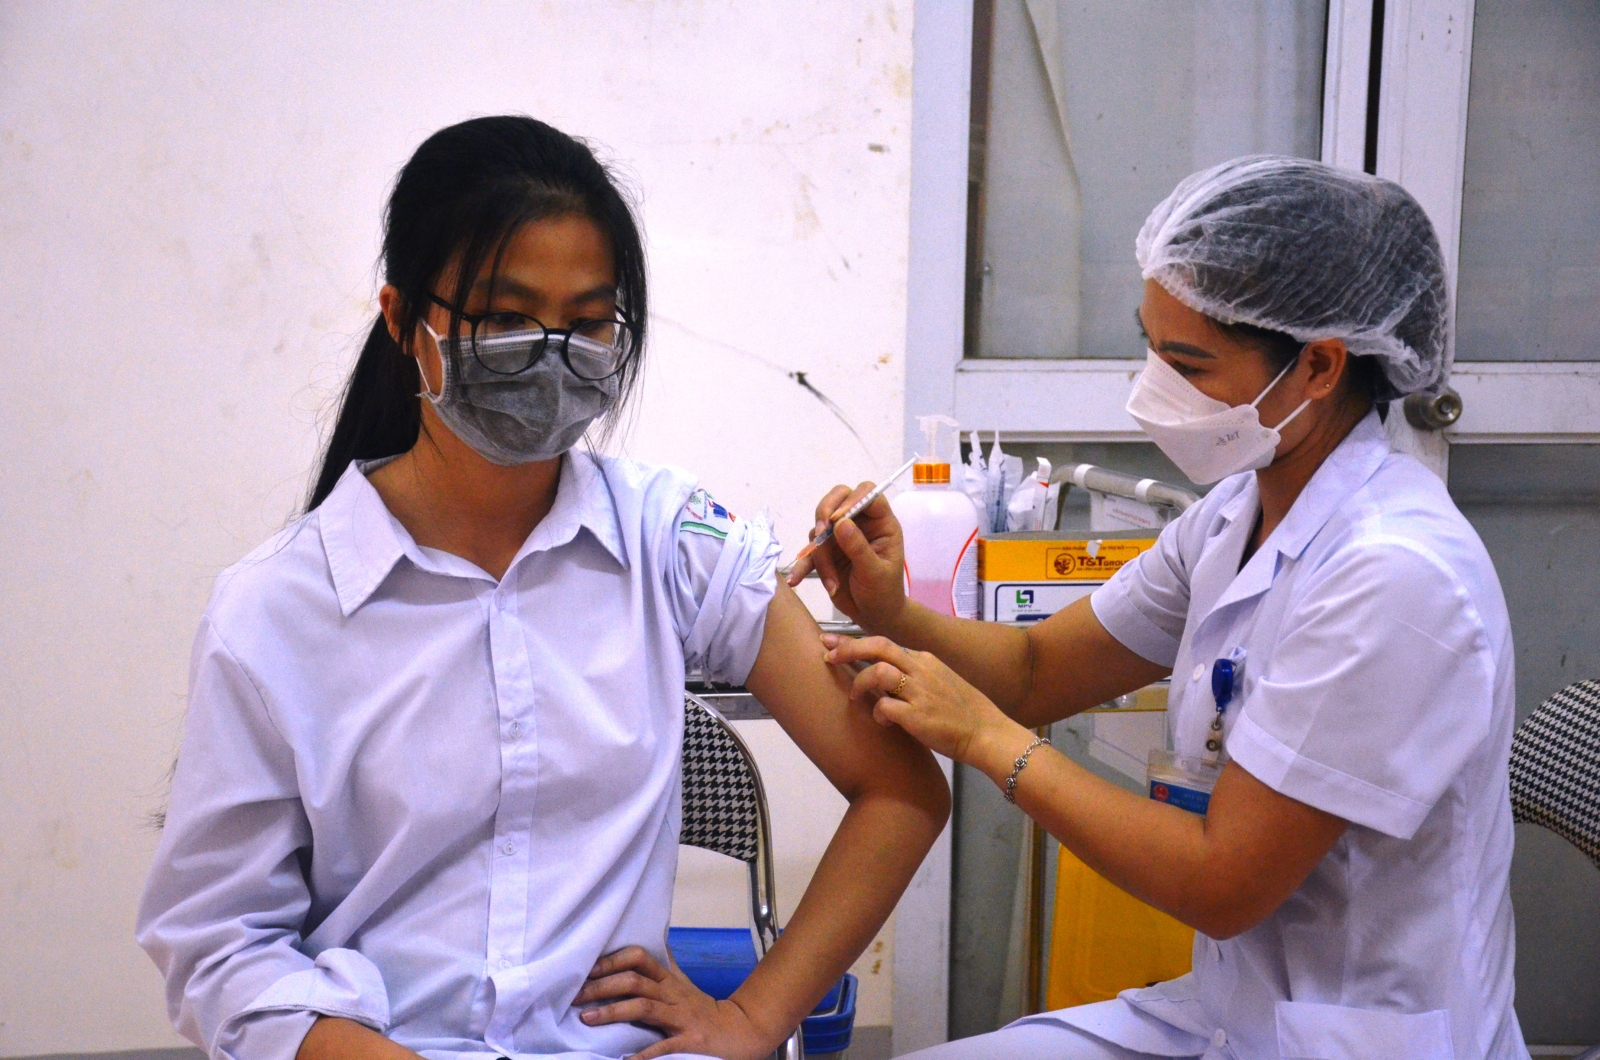 Điện Biên: Gần 1.200 học sinh được tiêm vắc xin phòng Covid-19 trong đợt đầu